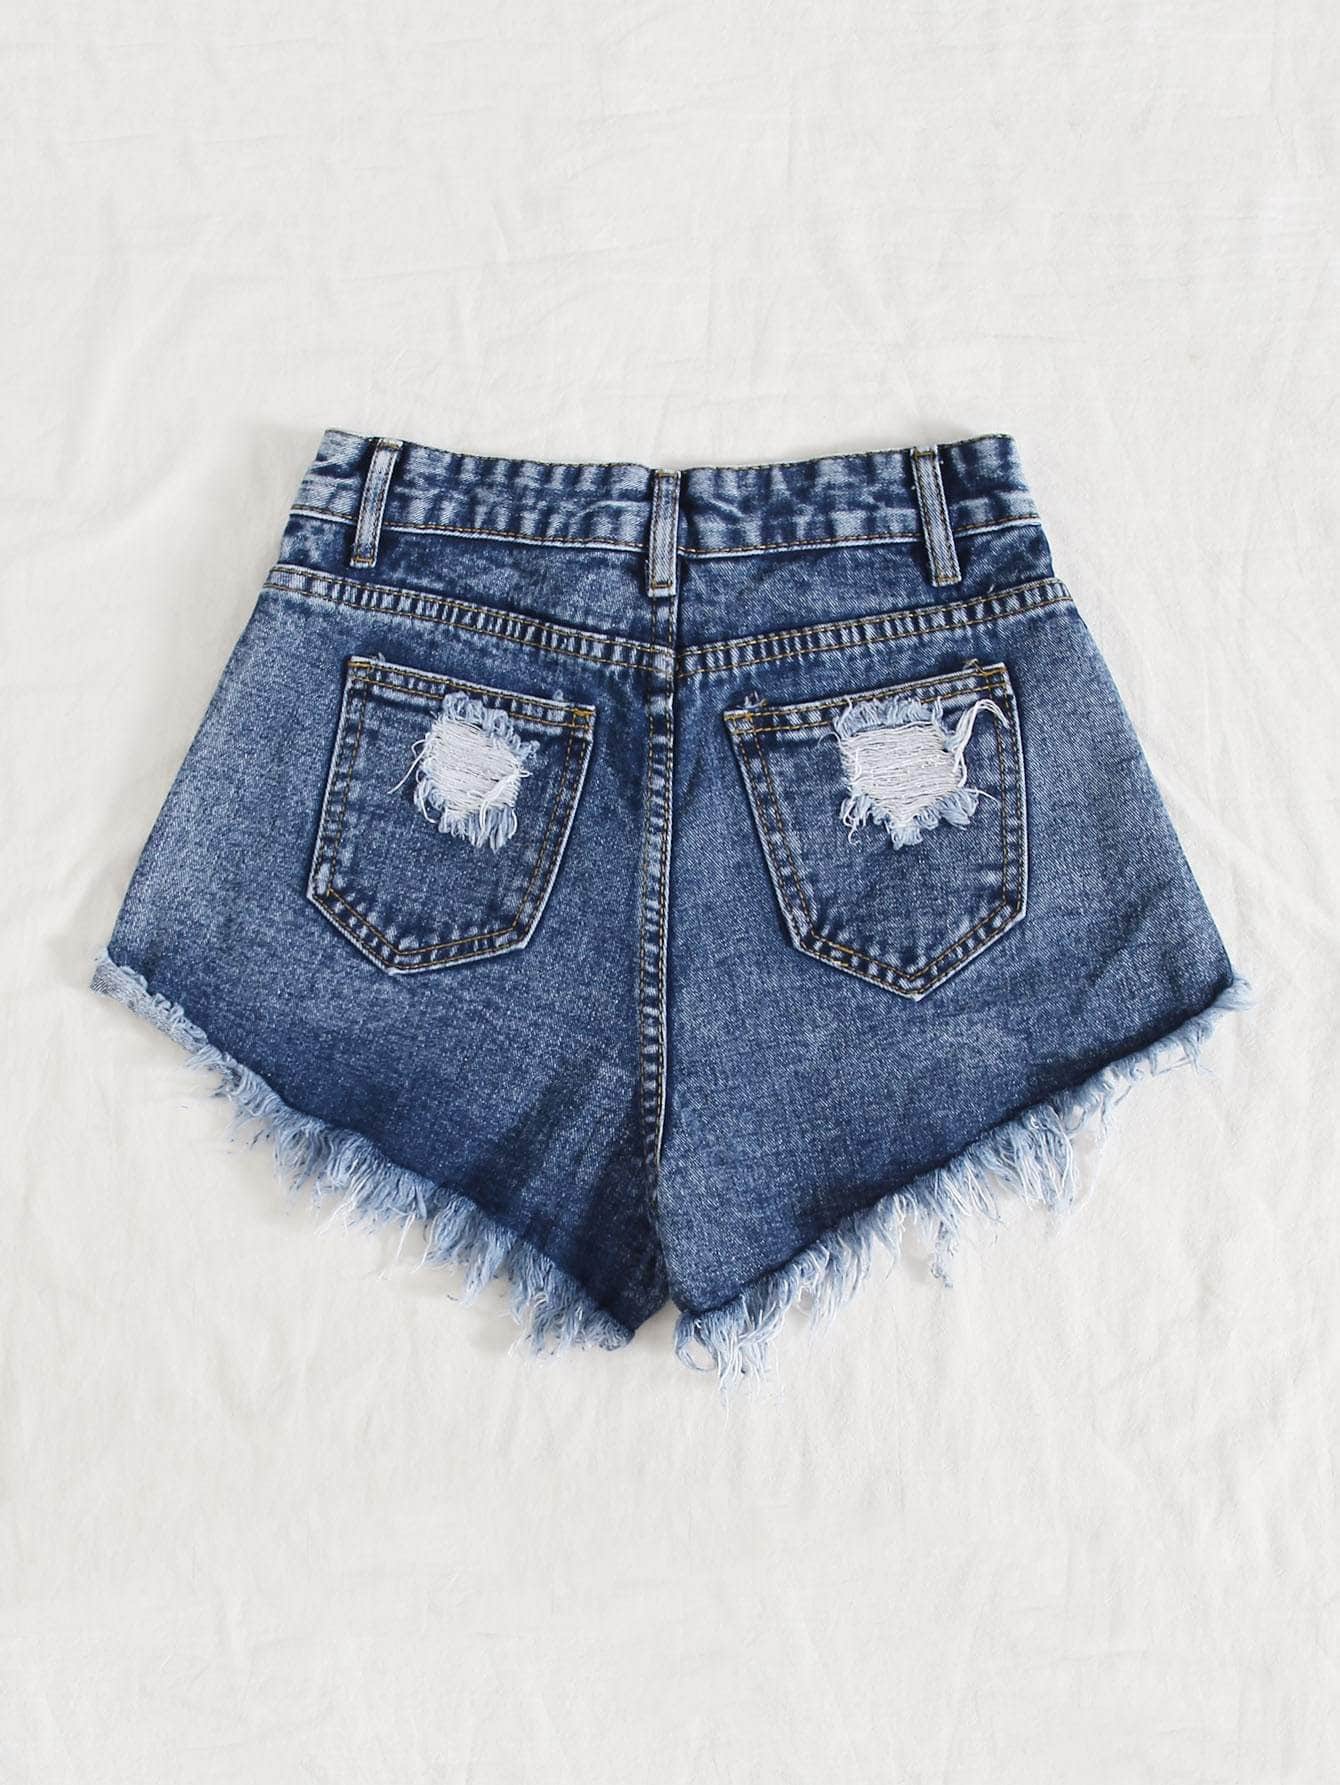 Azul lavado medio / M Shorts jean rotos bajo crudo